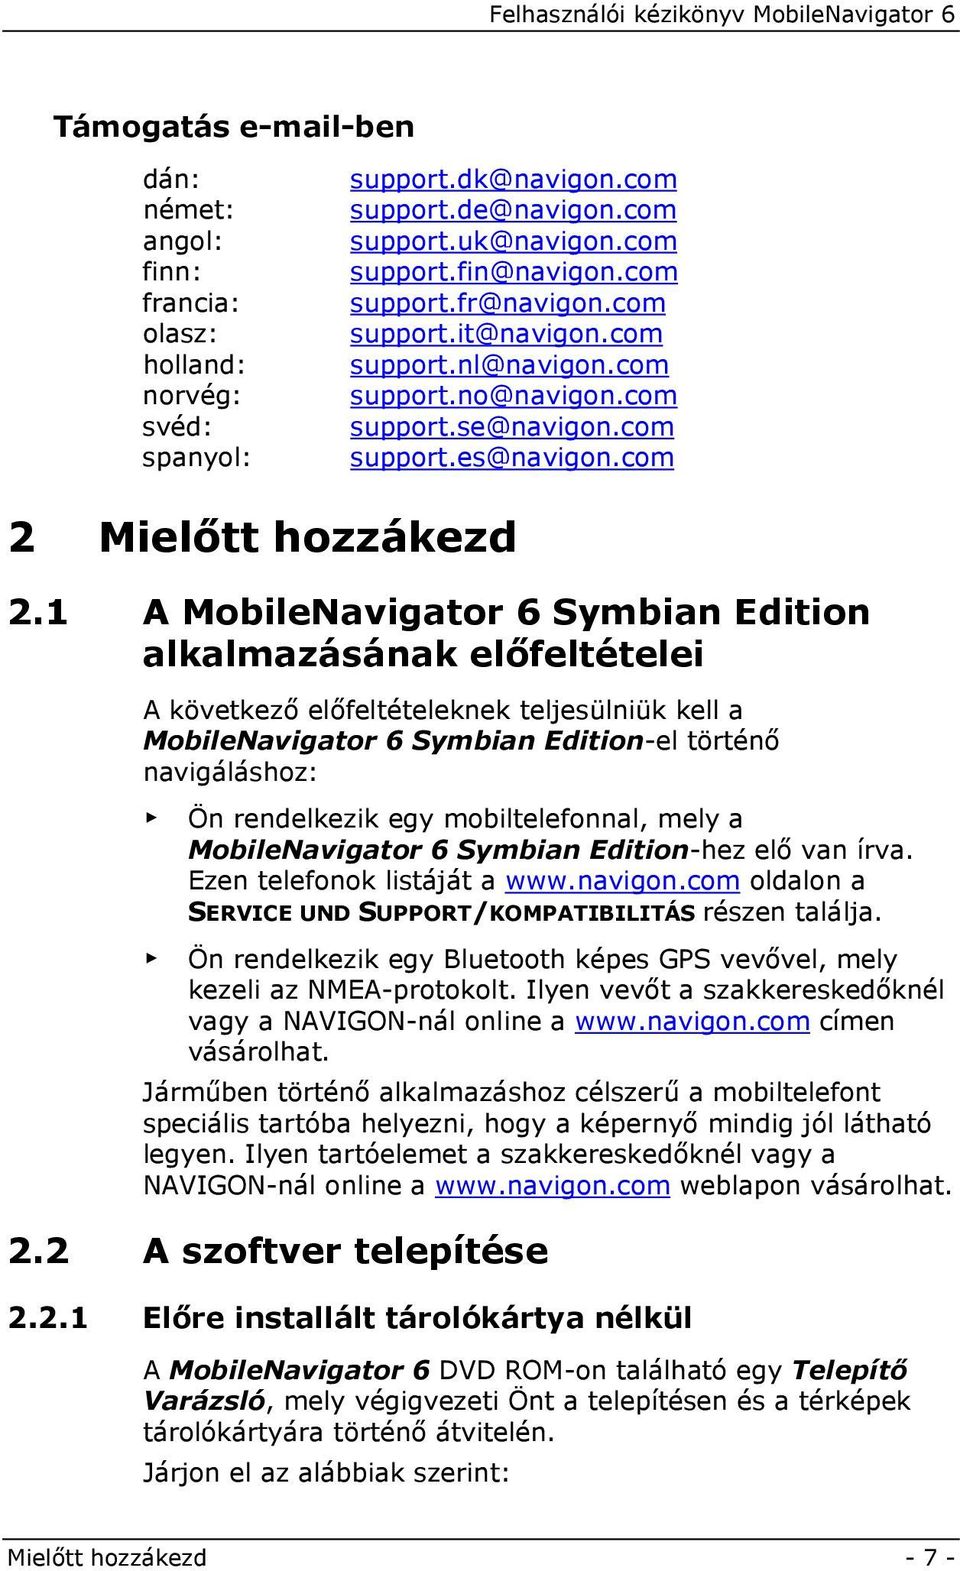 1 A MobileNavigator 6 Symbian Edition alkalmazásának előfeltételei A következő előfeltételeknek teljesülniük kell a MobileNavigator 6 Symbian Edition-el történő navigáláshoz: Ön rendelkezik egy